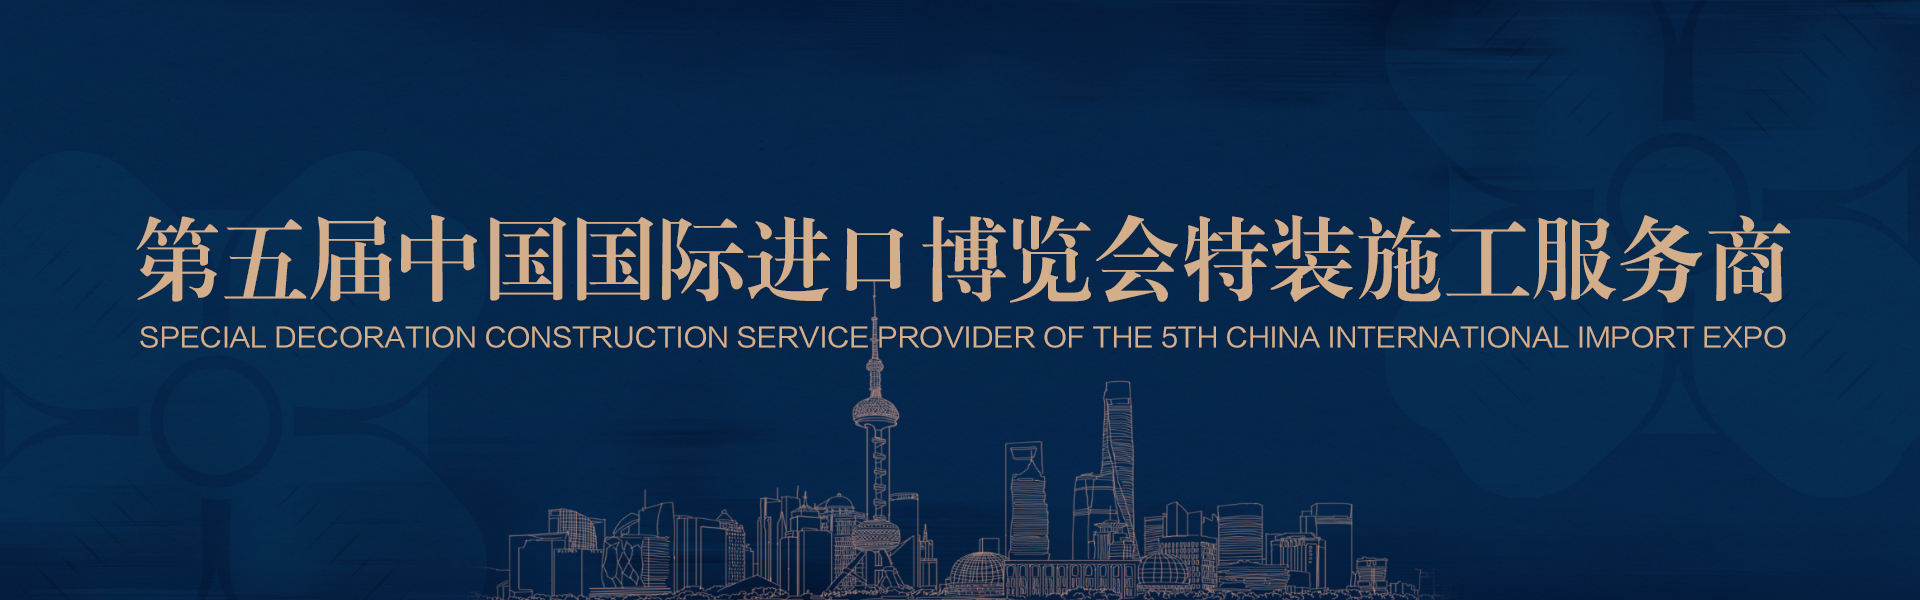 第五届中国国际进口博览会特装施工服务商